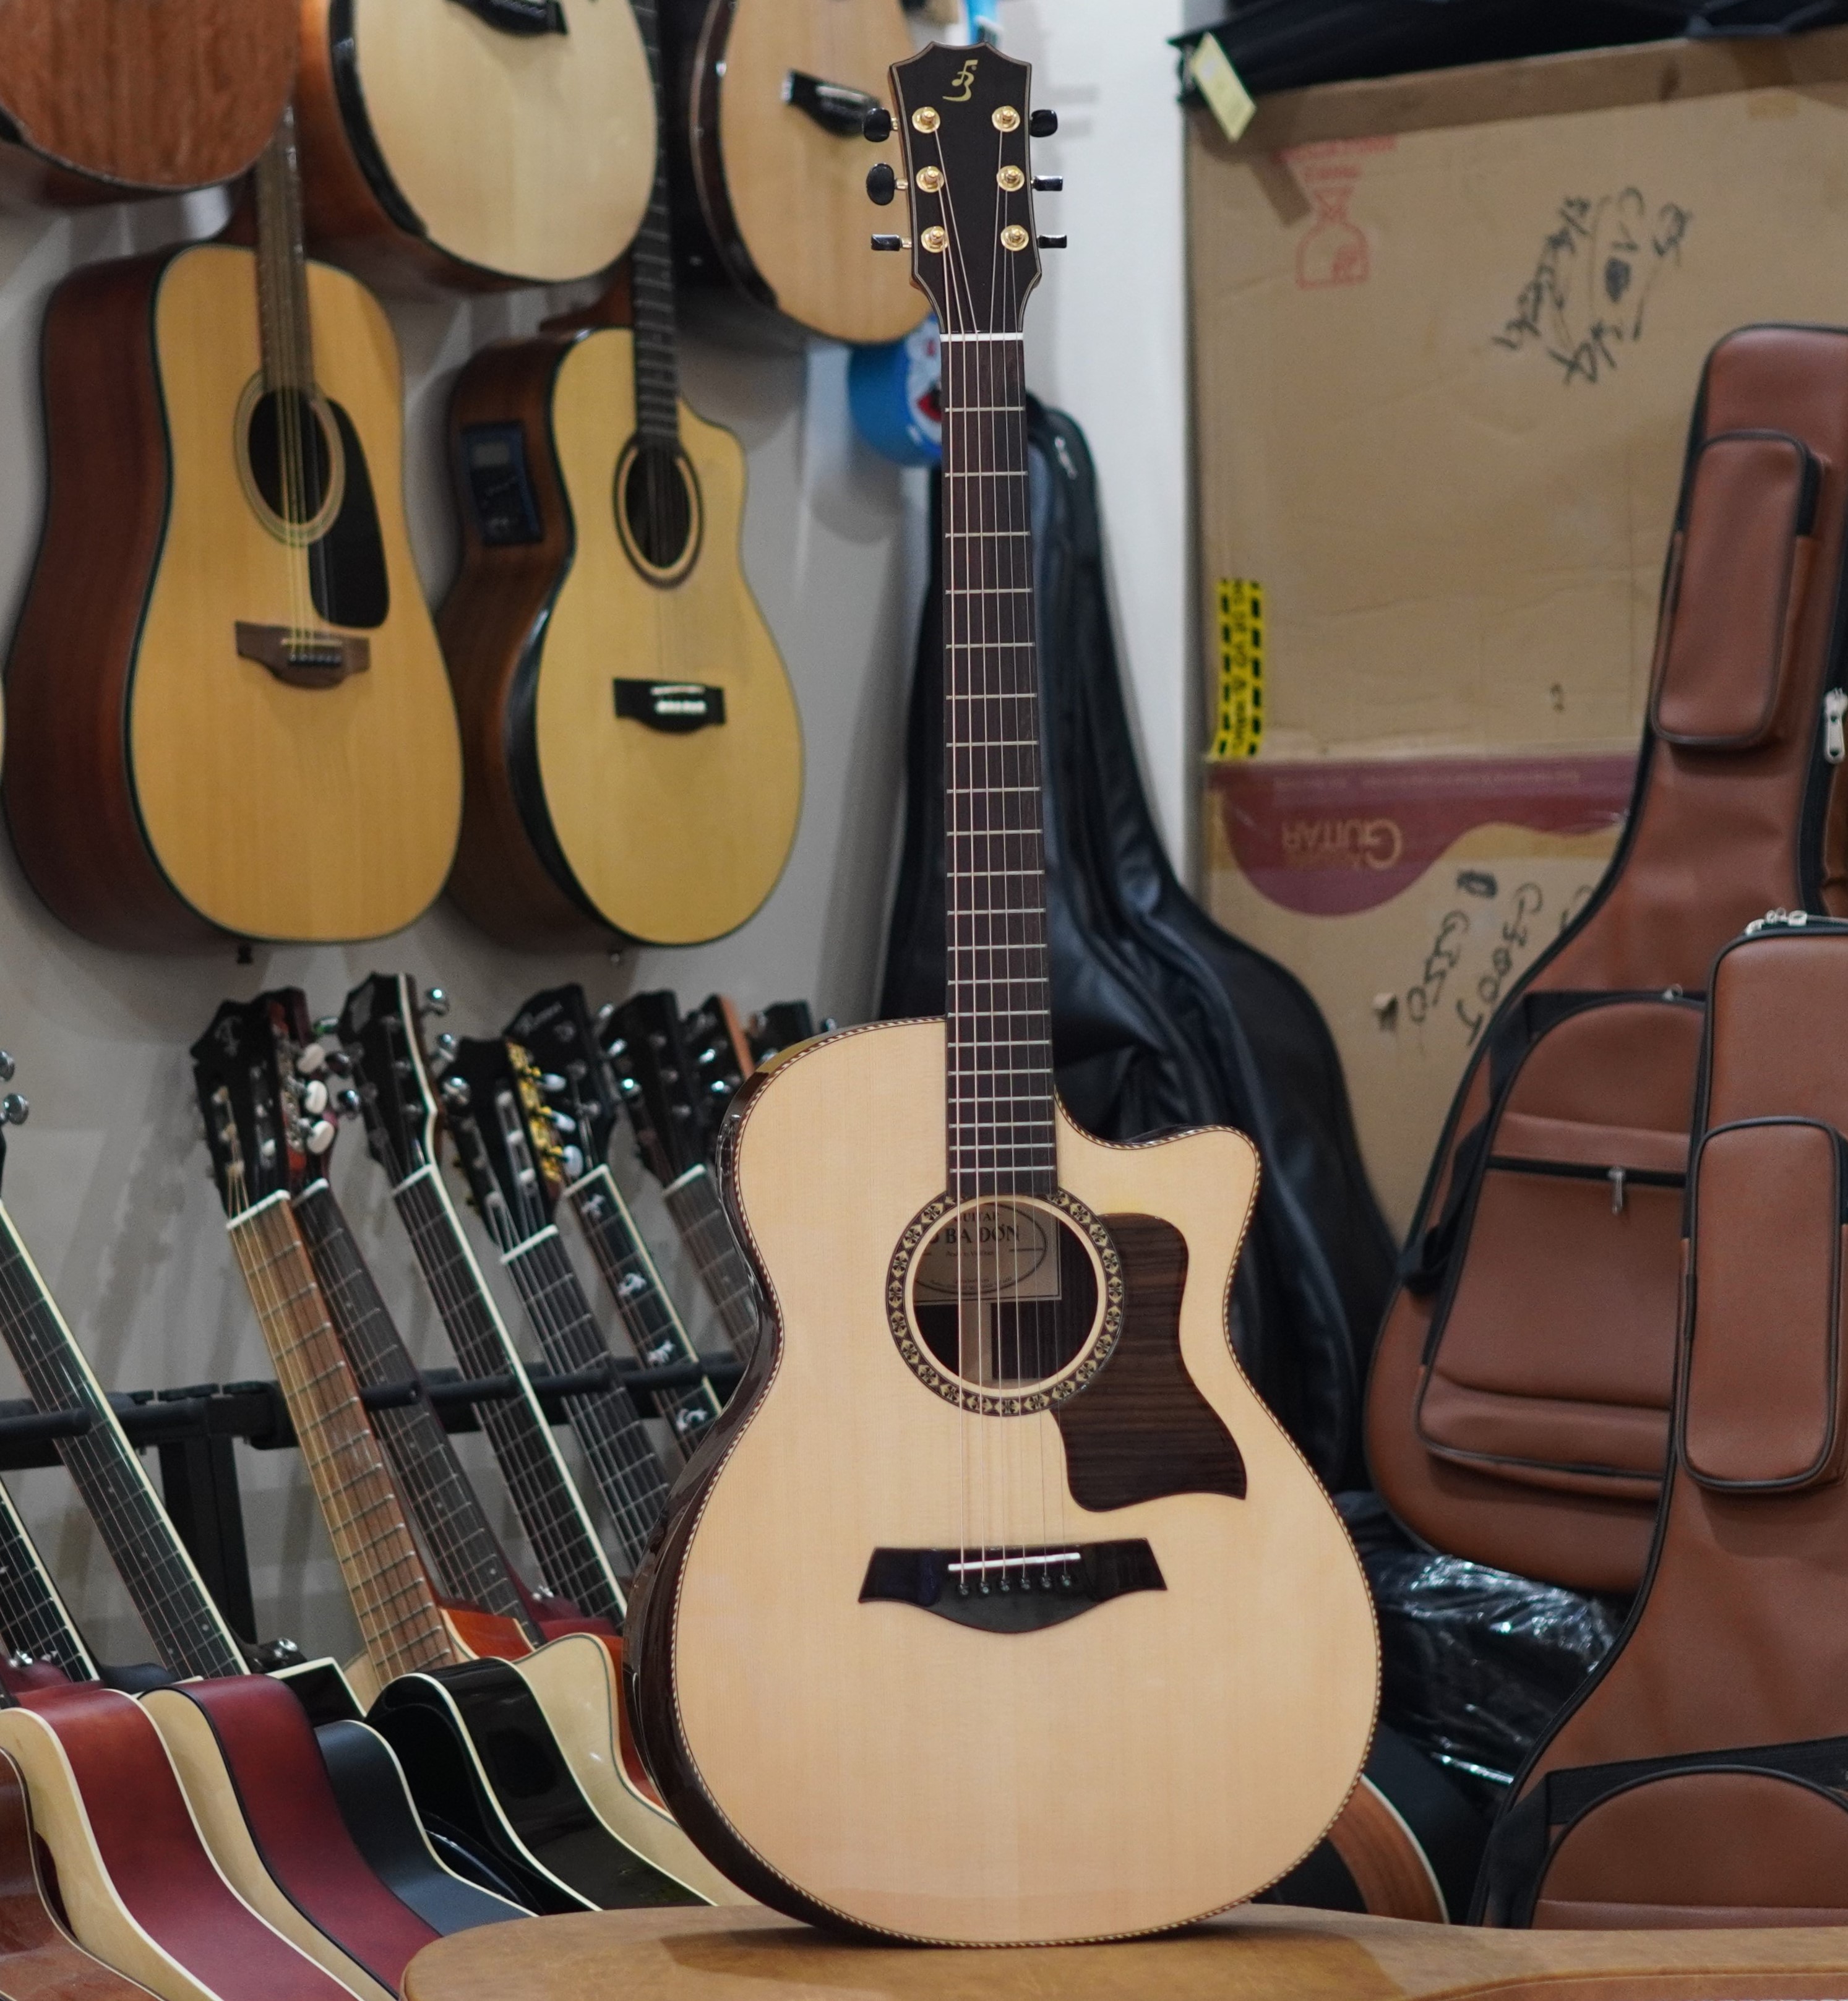 Shop Guitar Thanh Oai Hà Nội, Cửa hàng Bán Guitar, Sửa đàn Guitar Uy Tín Hà Nội